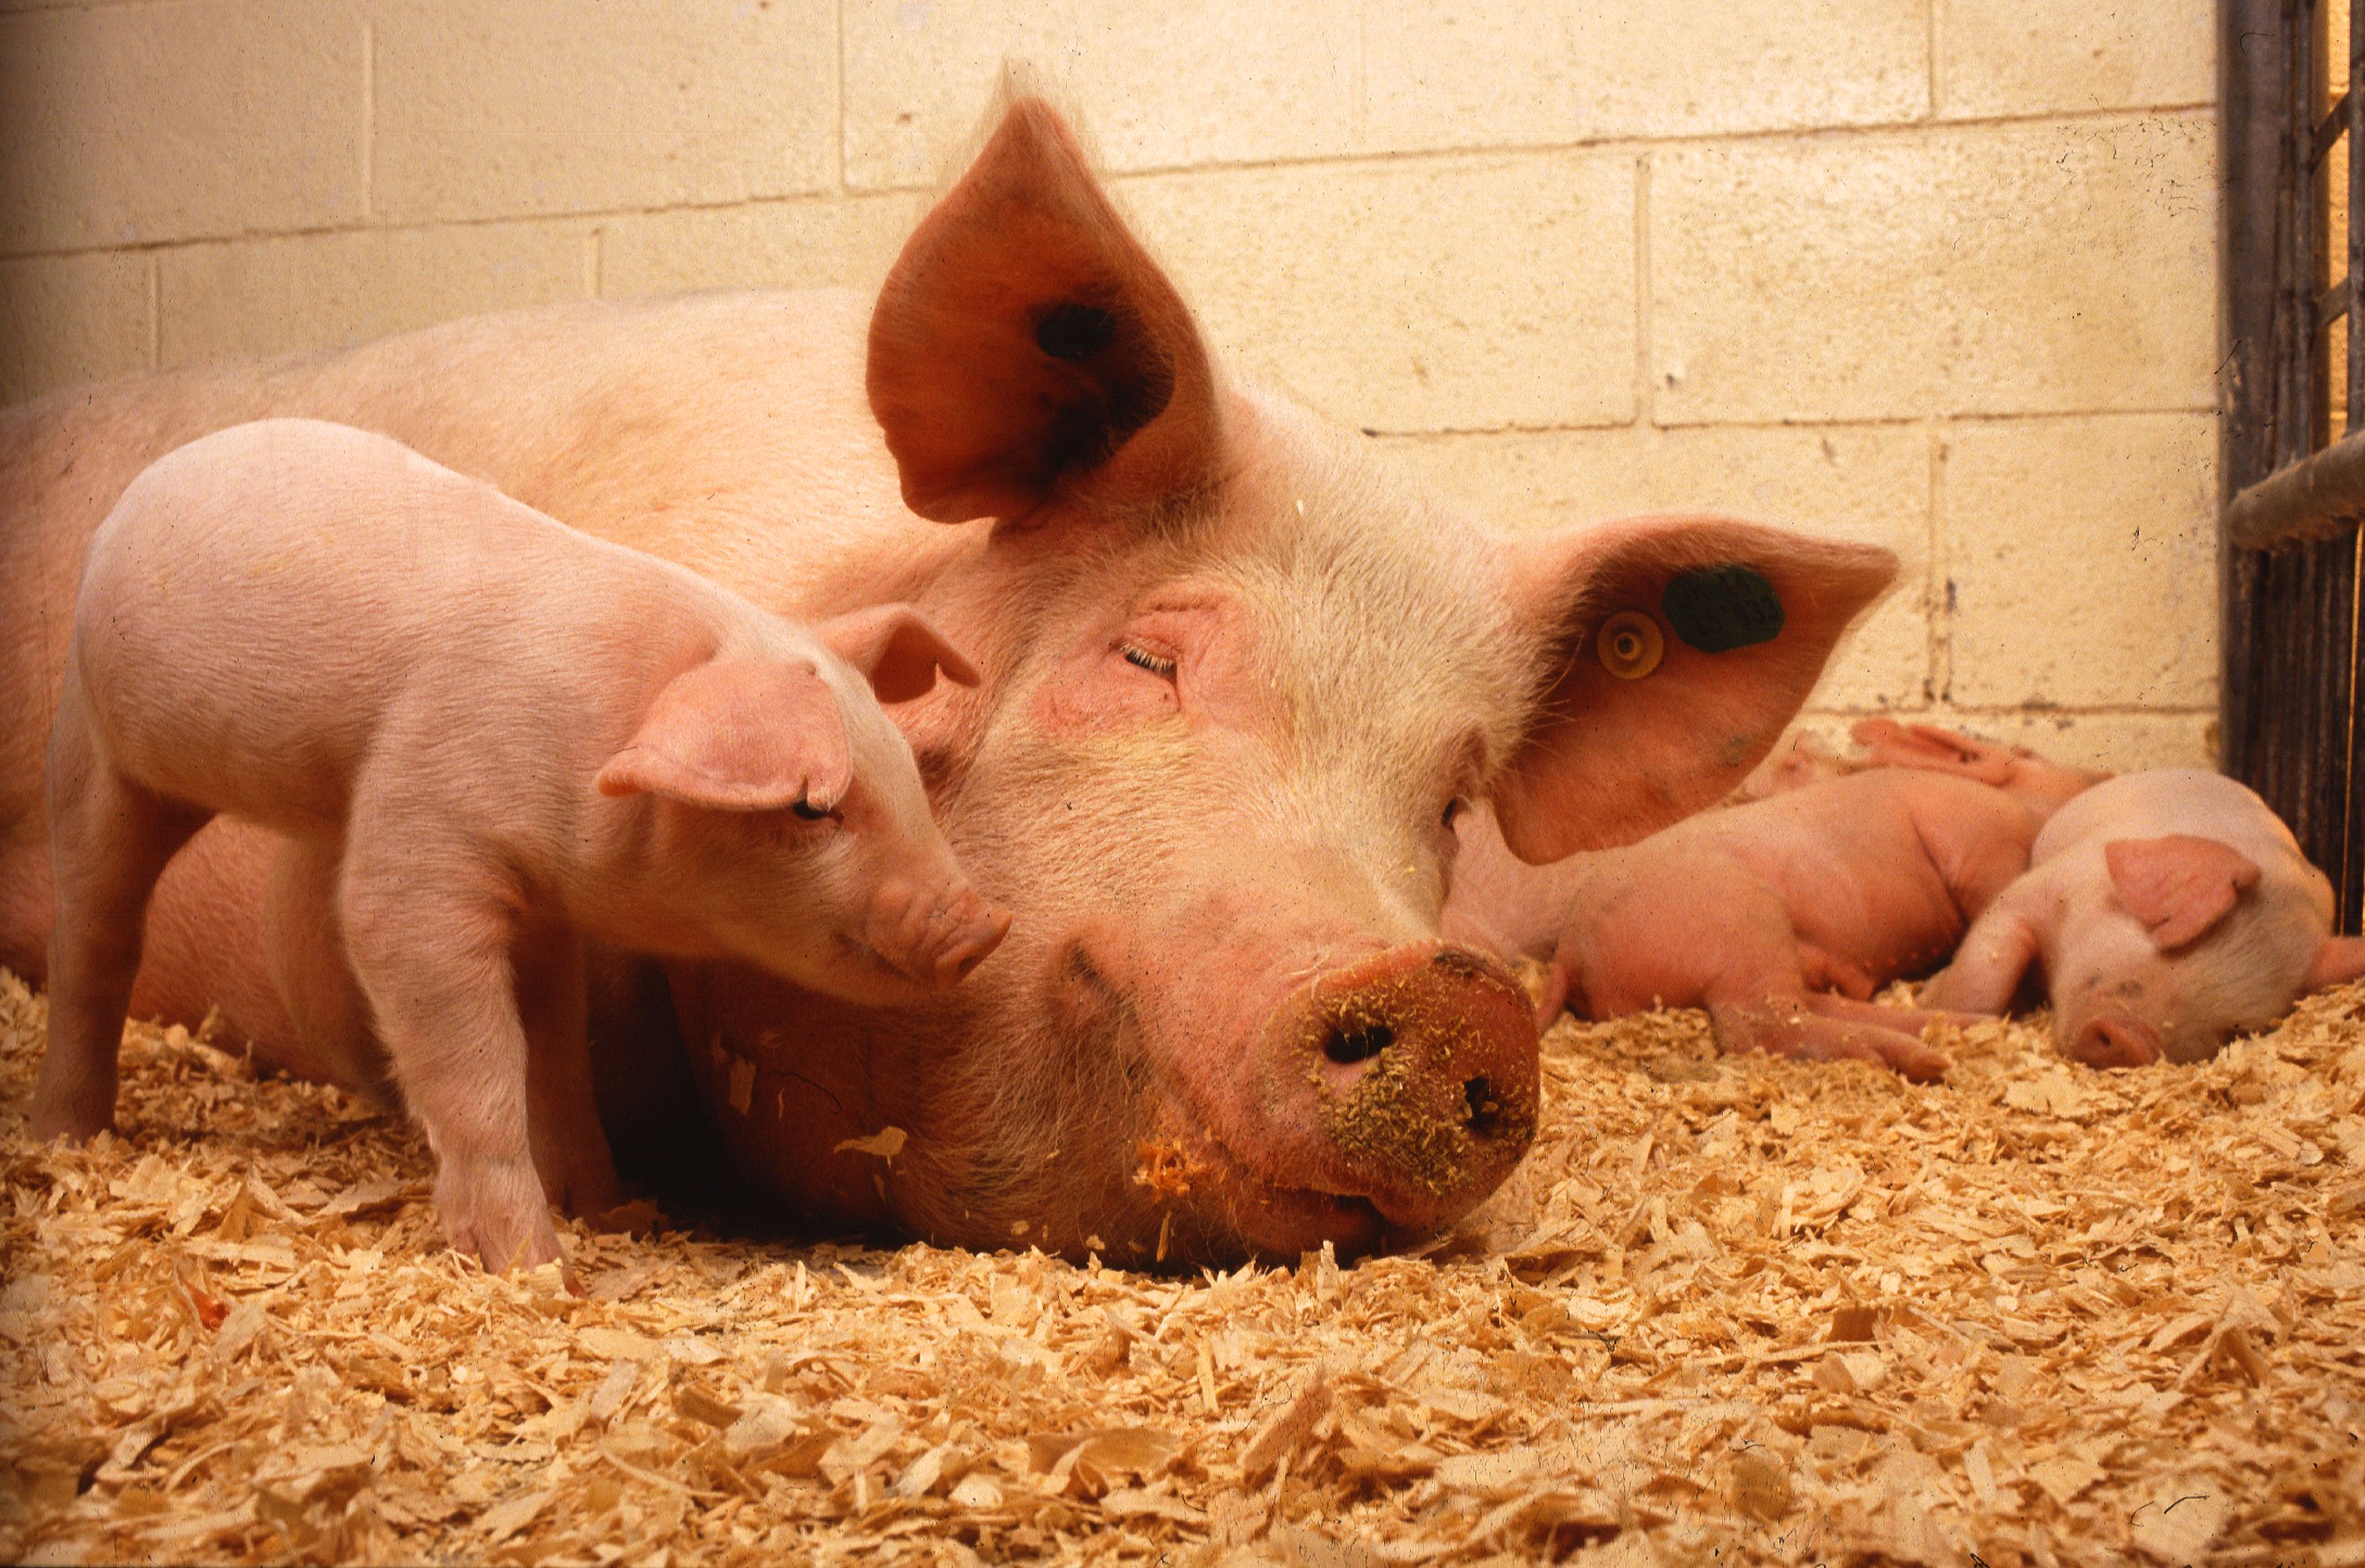 增长的人体器官在猪。 有什么可以去错误的吗？